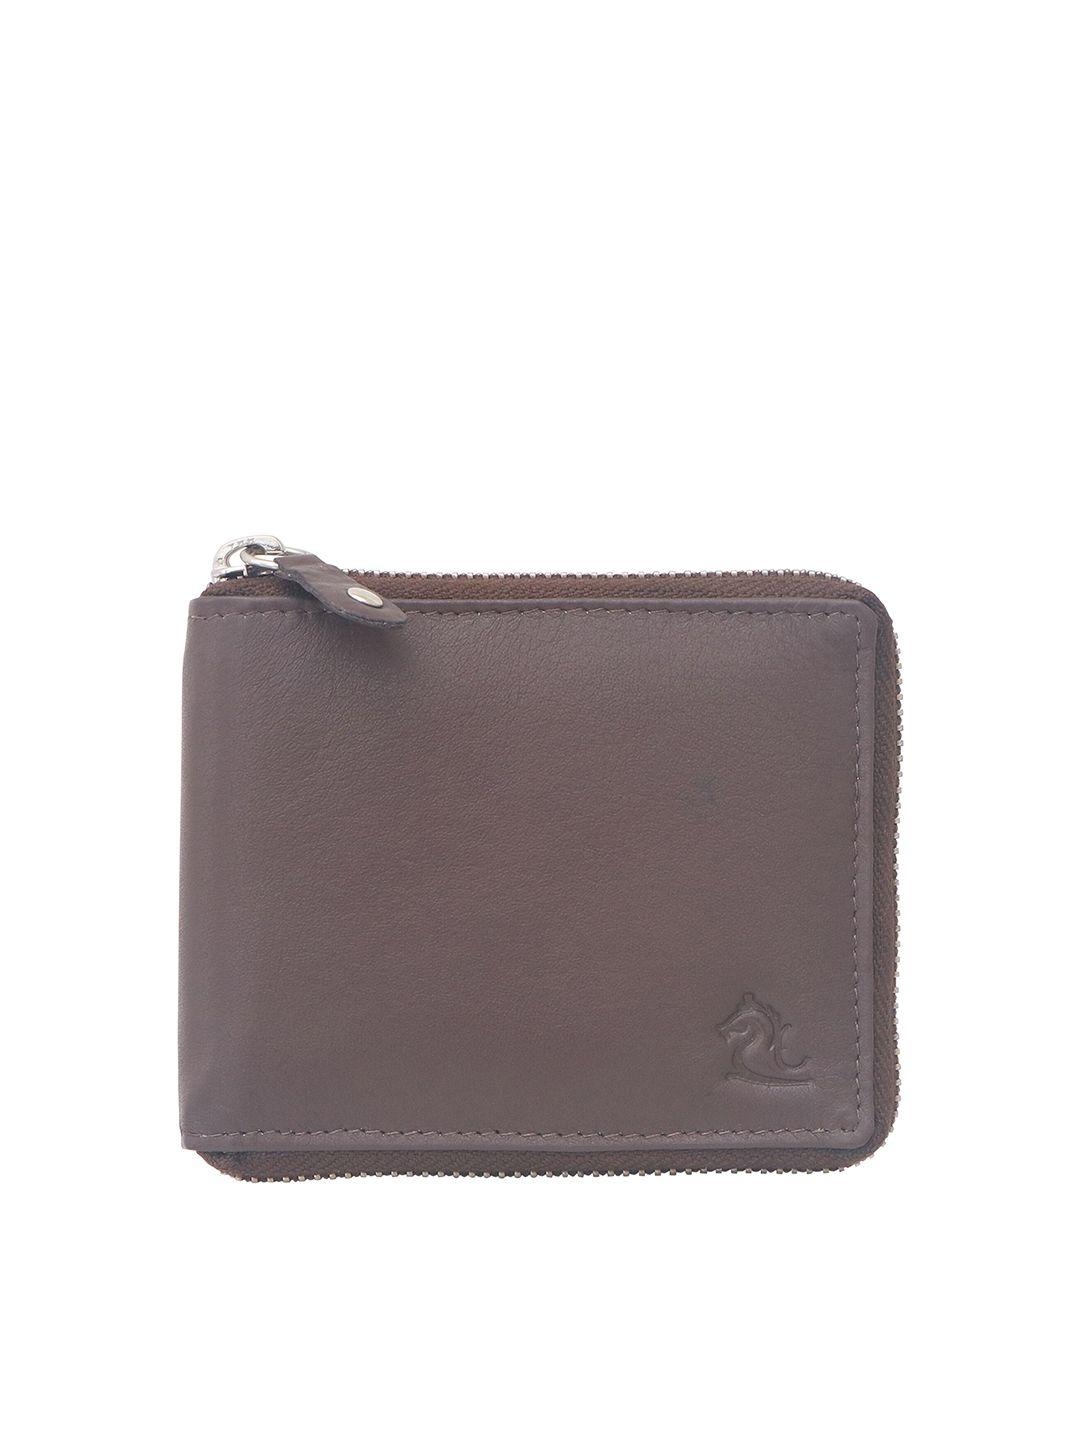 kara men solid leather zip around wallet